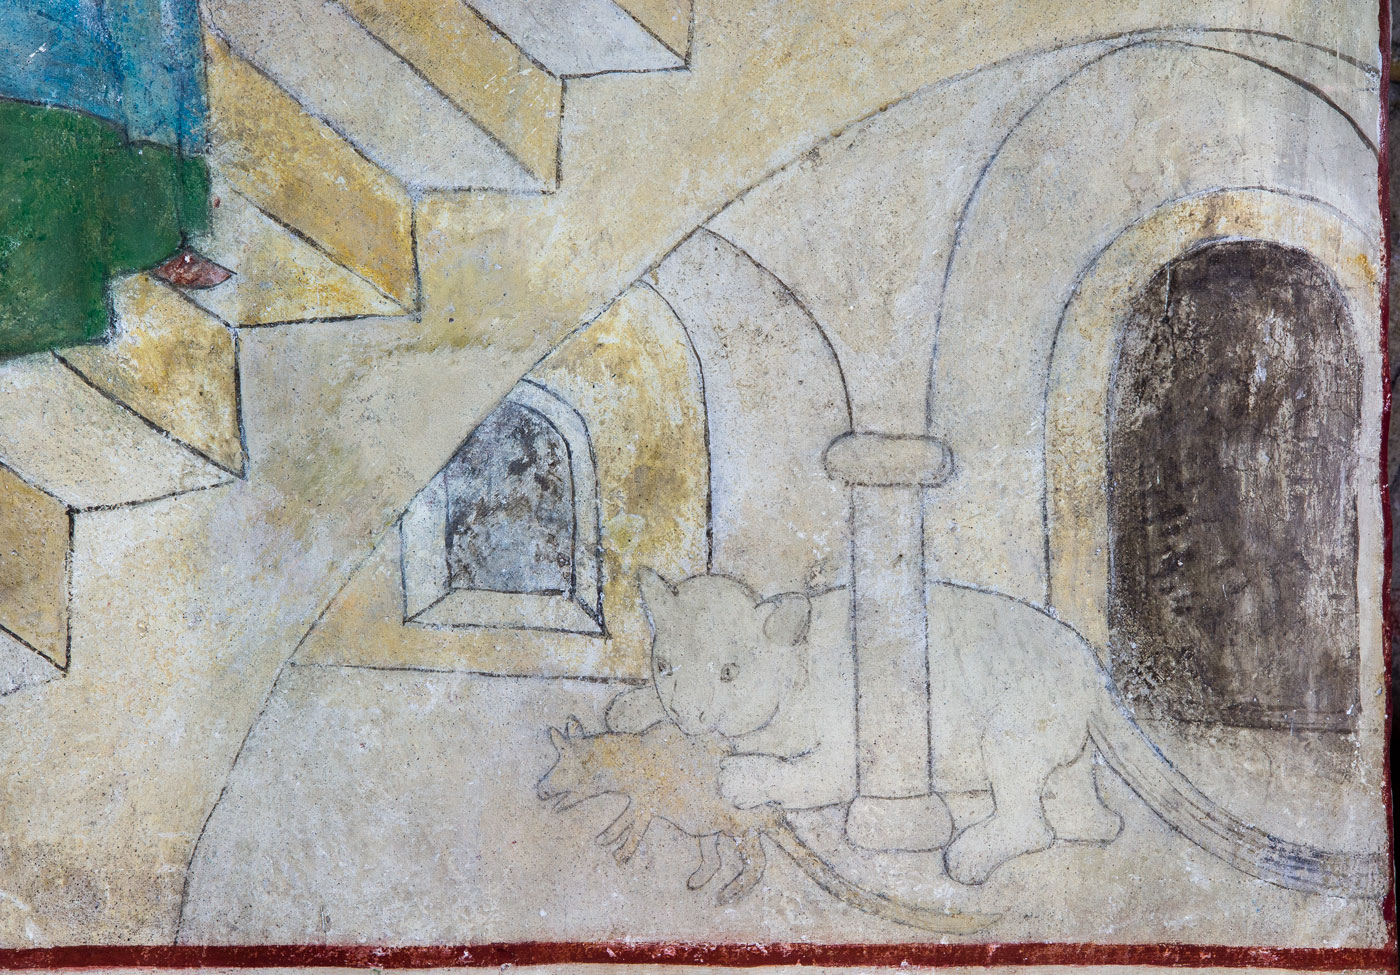 Katt biter råtta (detalj ur Maria tempelgång) - Bromma kyrka